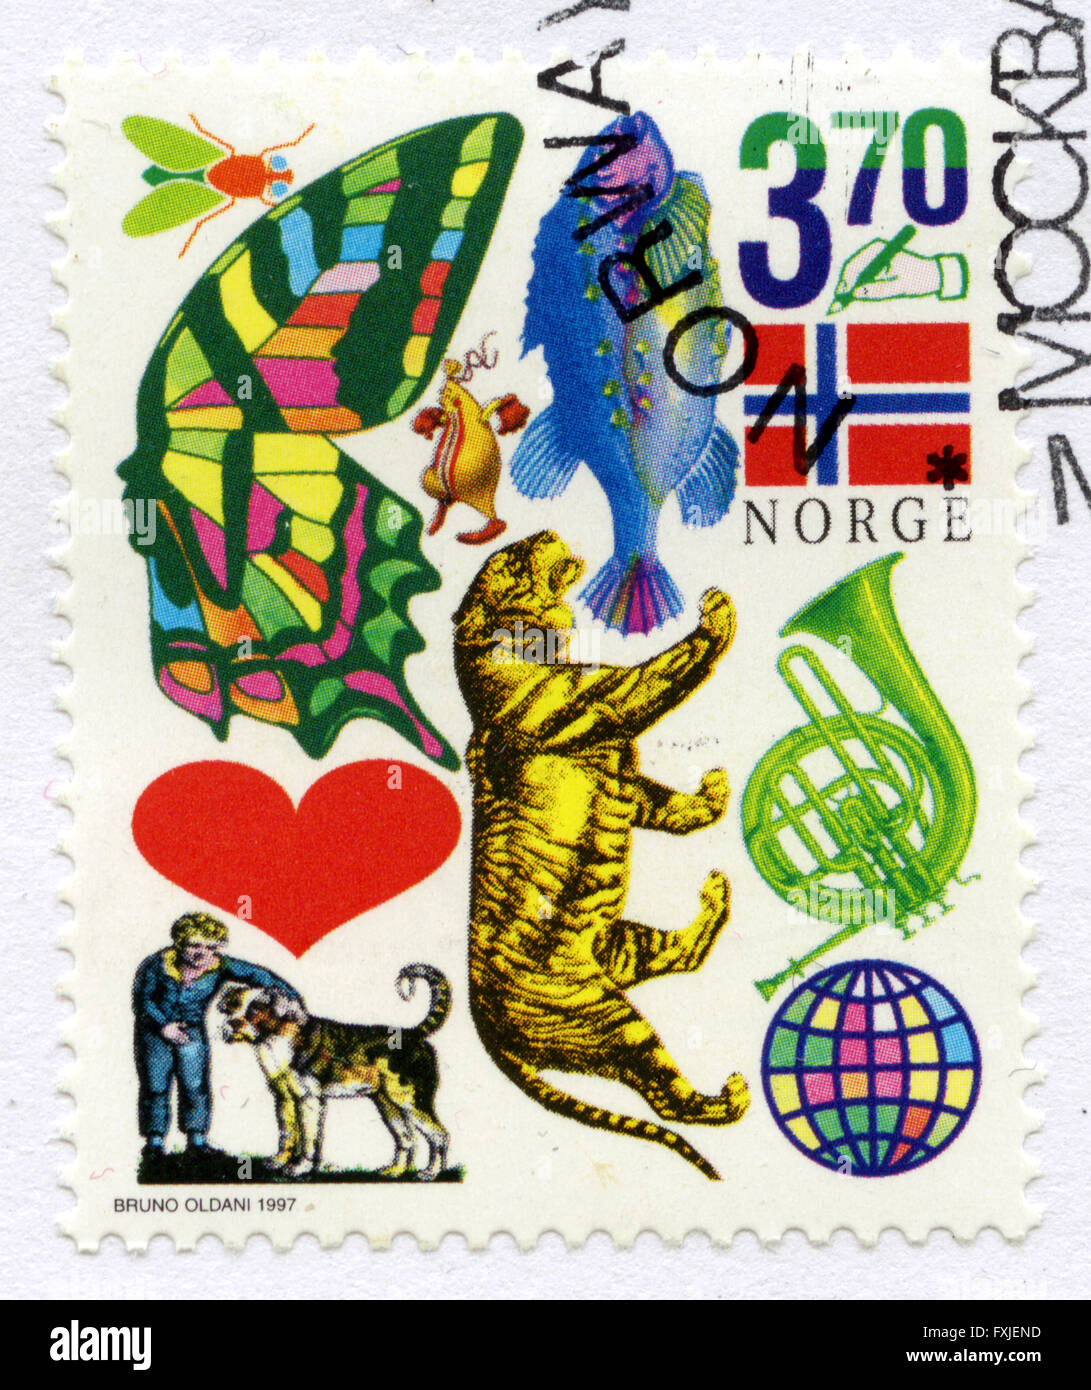 La Norvège,stamp, mark post, Banque D'Images